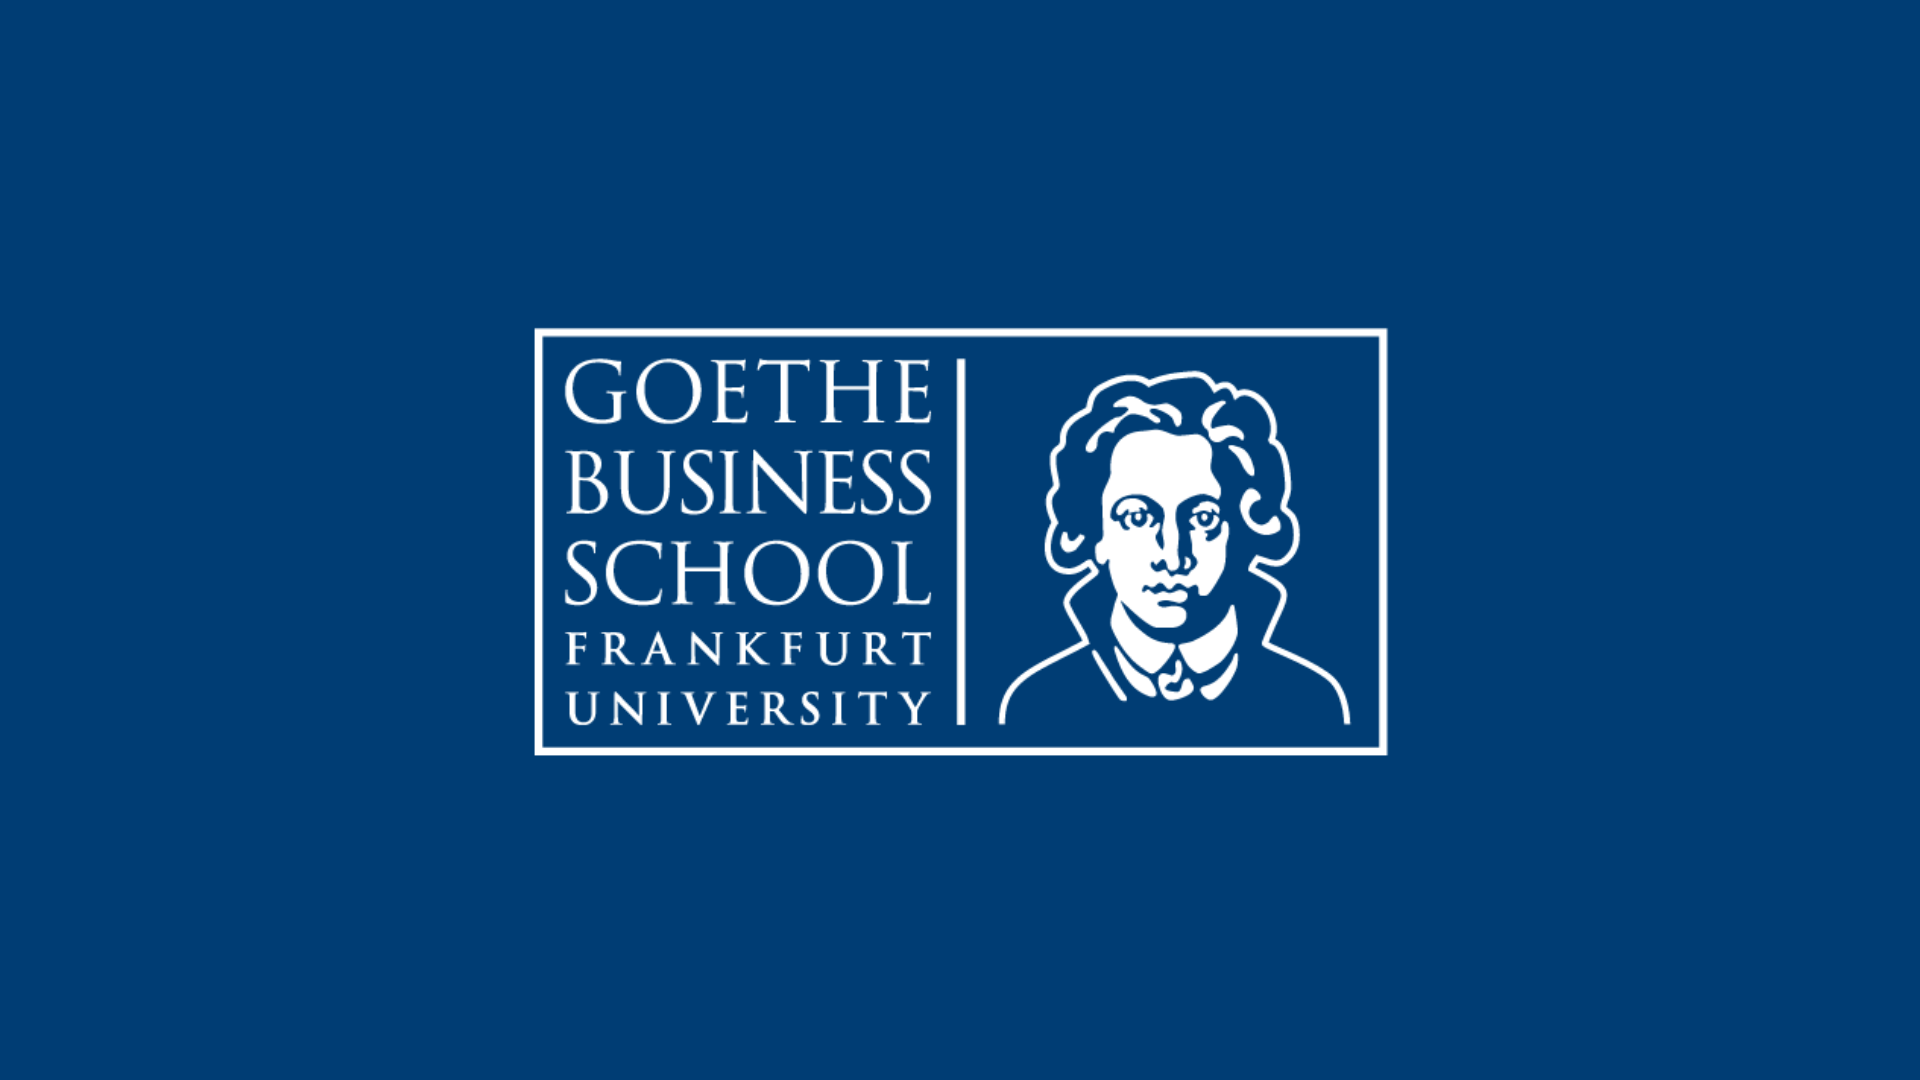 (c) Goethe-business-school.de